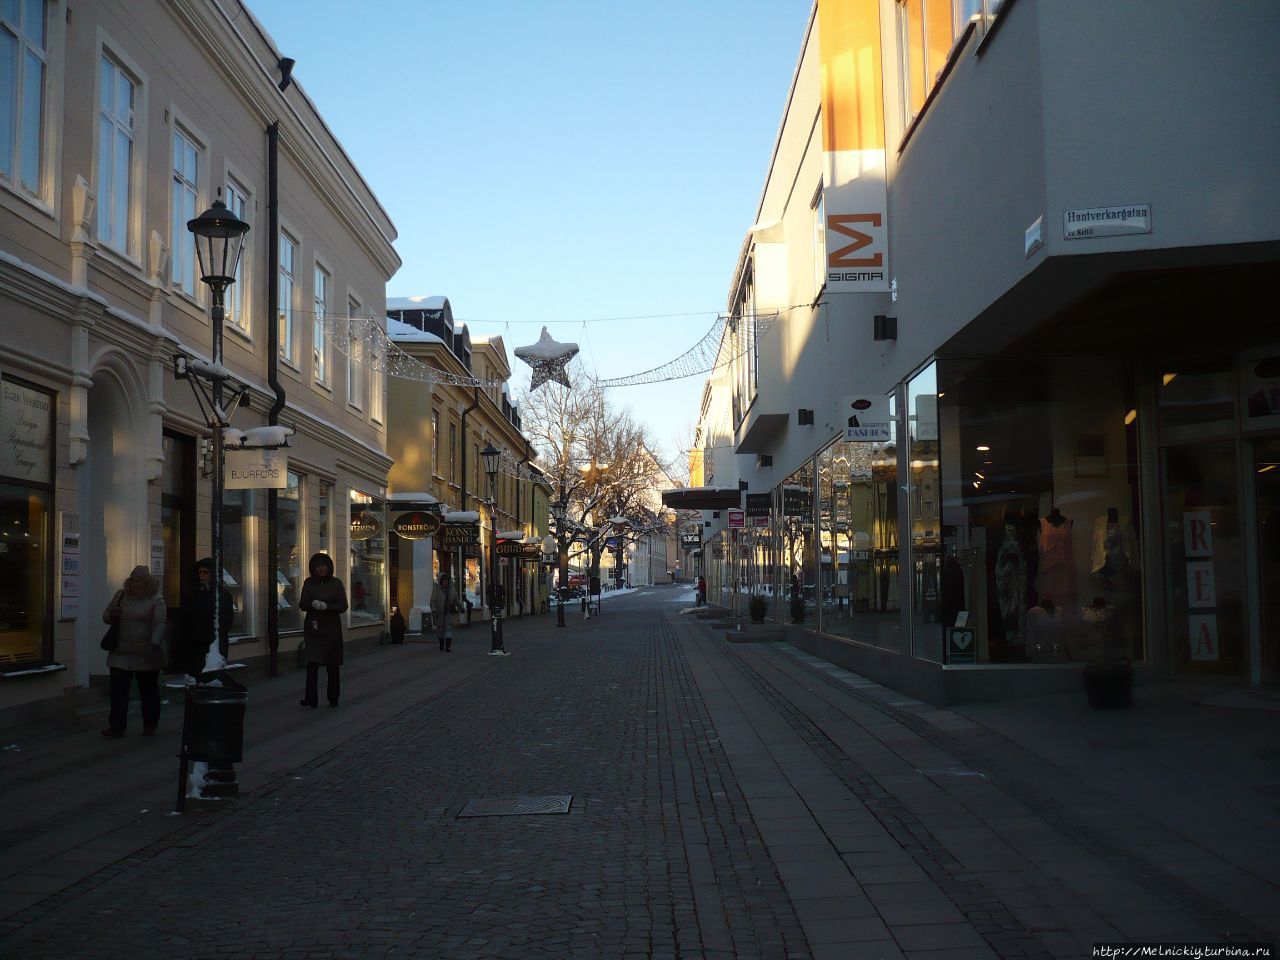 Короткое знакомство с городом рудокопов Вестерос, Швеция